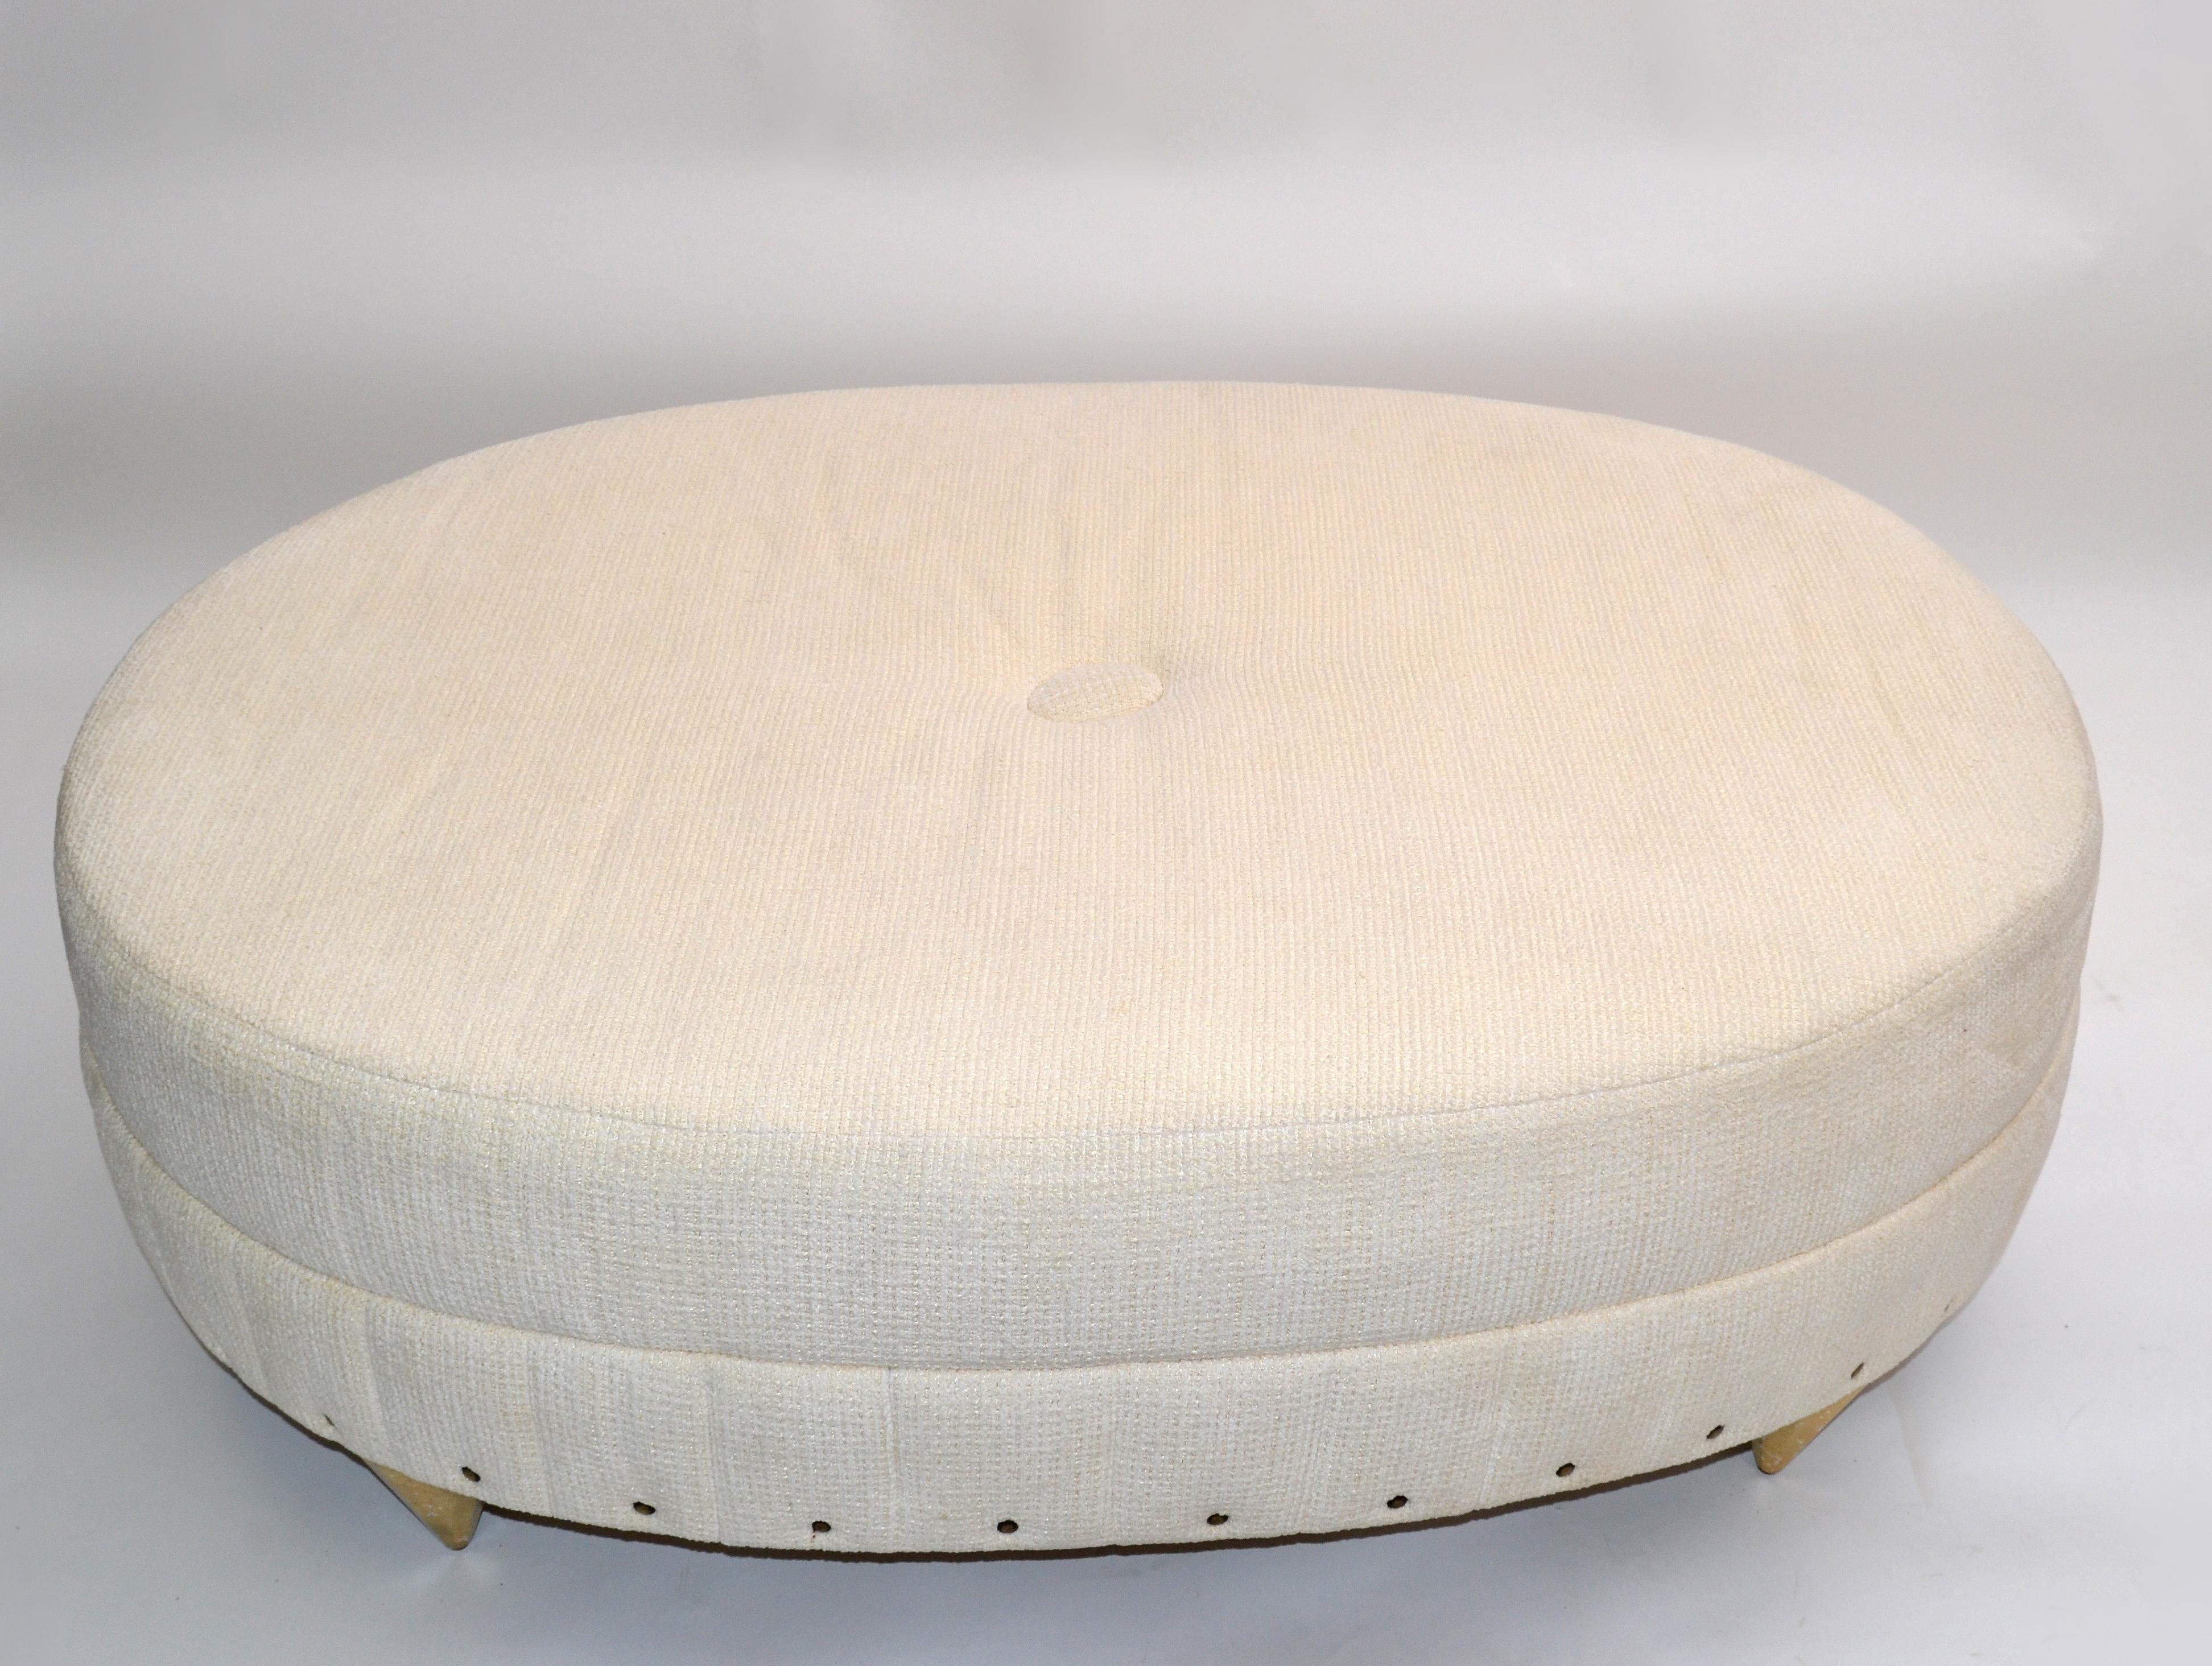 Modernes Daybed, rundes Sofa, übergroße Ottomane, entworfen von Larry Laslo für Directional in den 1990er Jahren.
Die Polsterung besteht aus einem hochwertigen Bouclé-Stoff in den Farben Beige und Gold oder Taupe.
Elegante goldene Holzbeine in